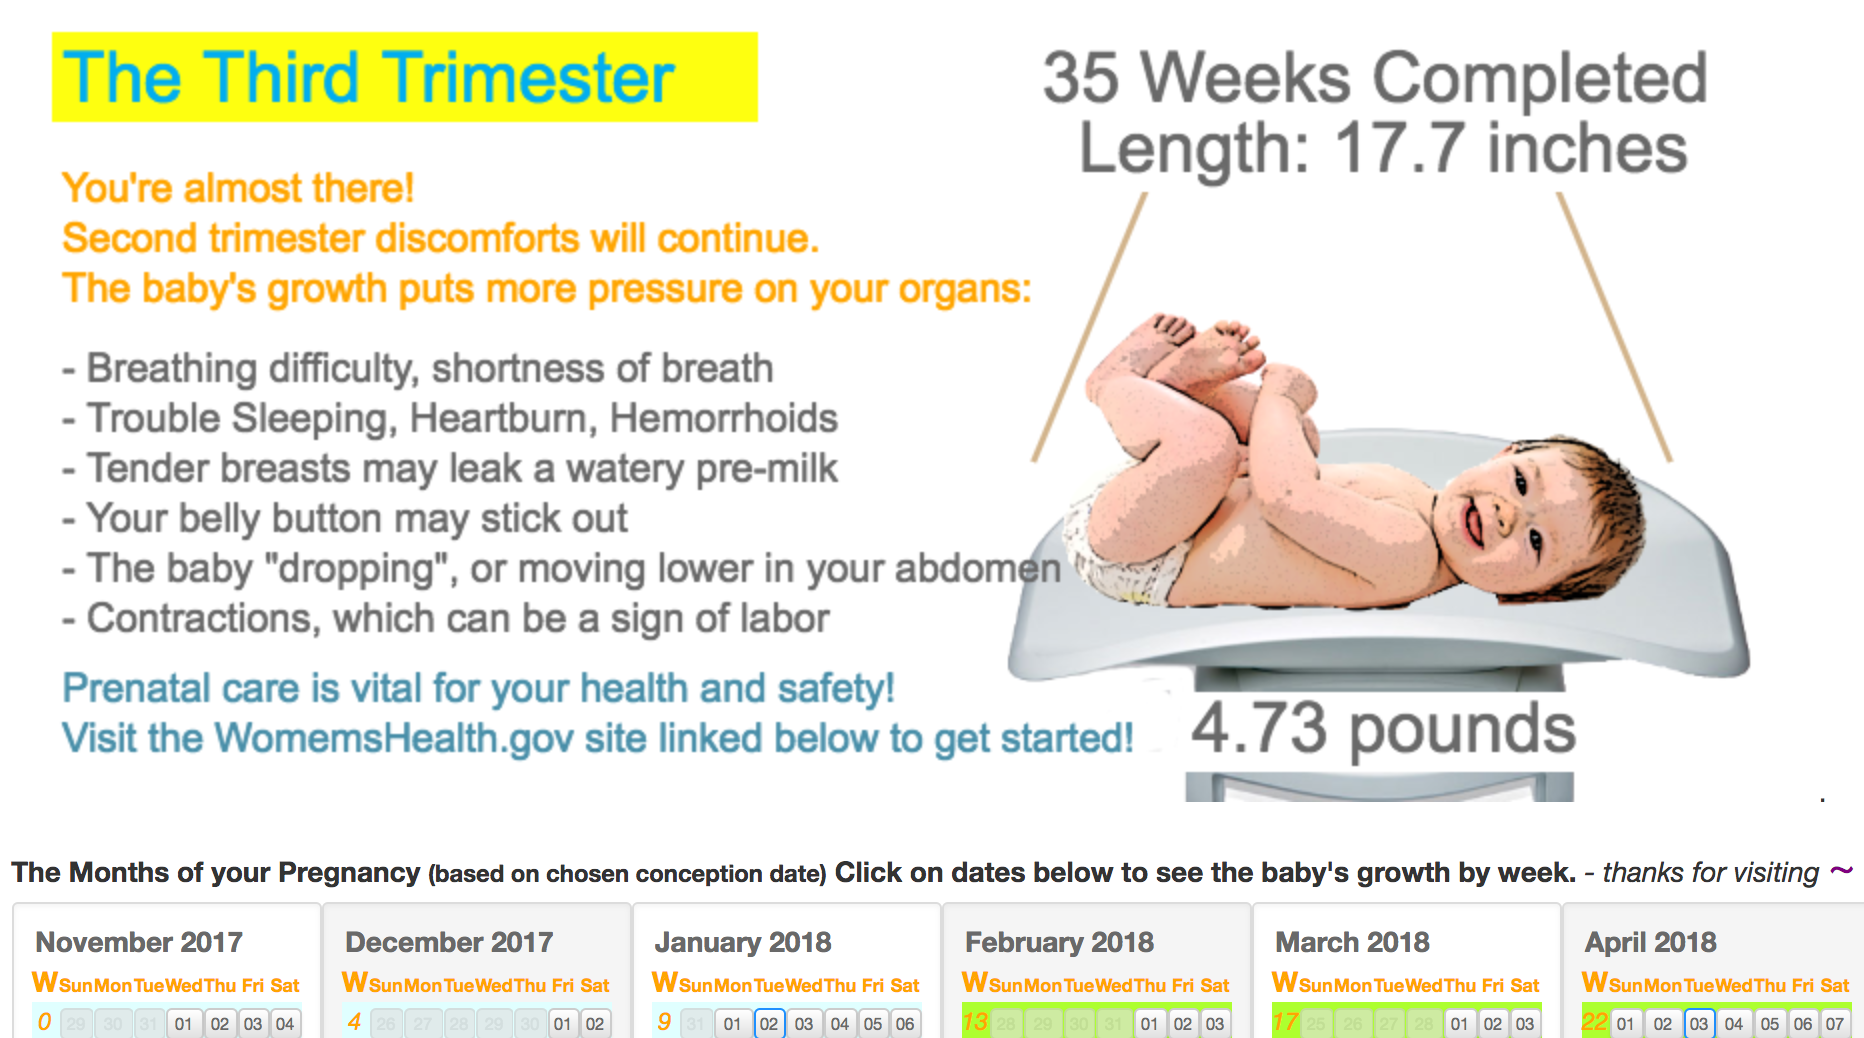 pregnancytimer.com pregnancy calendar tool